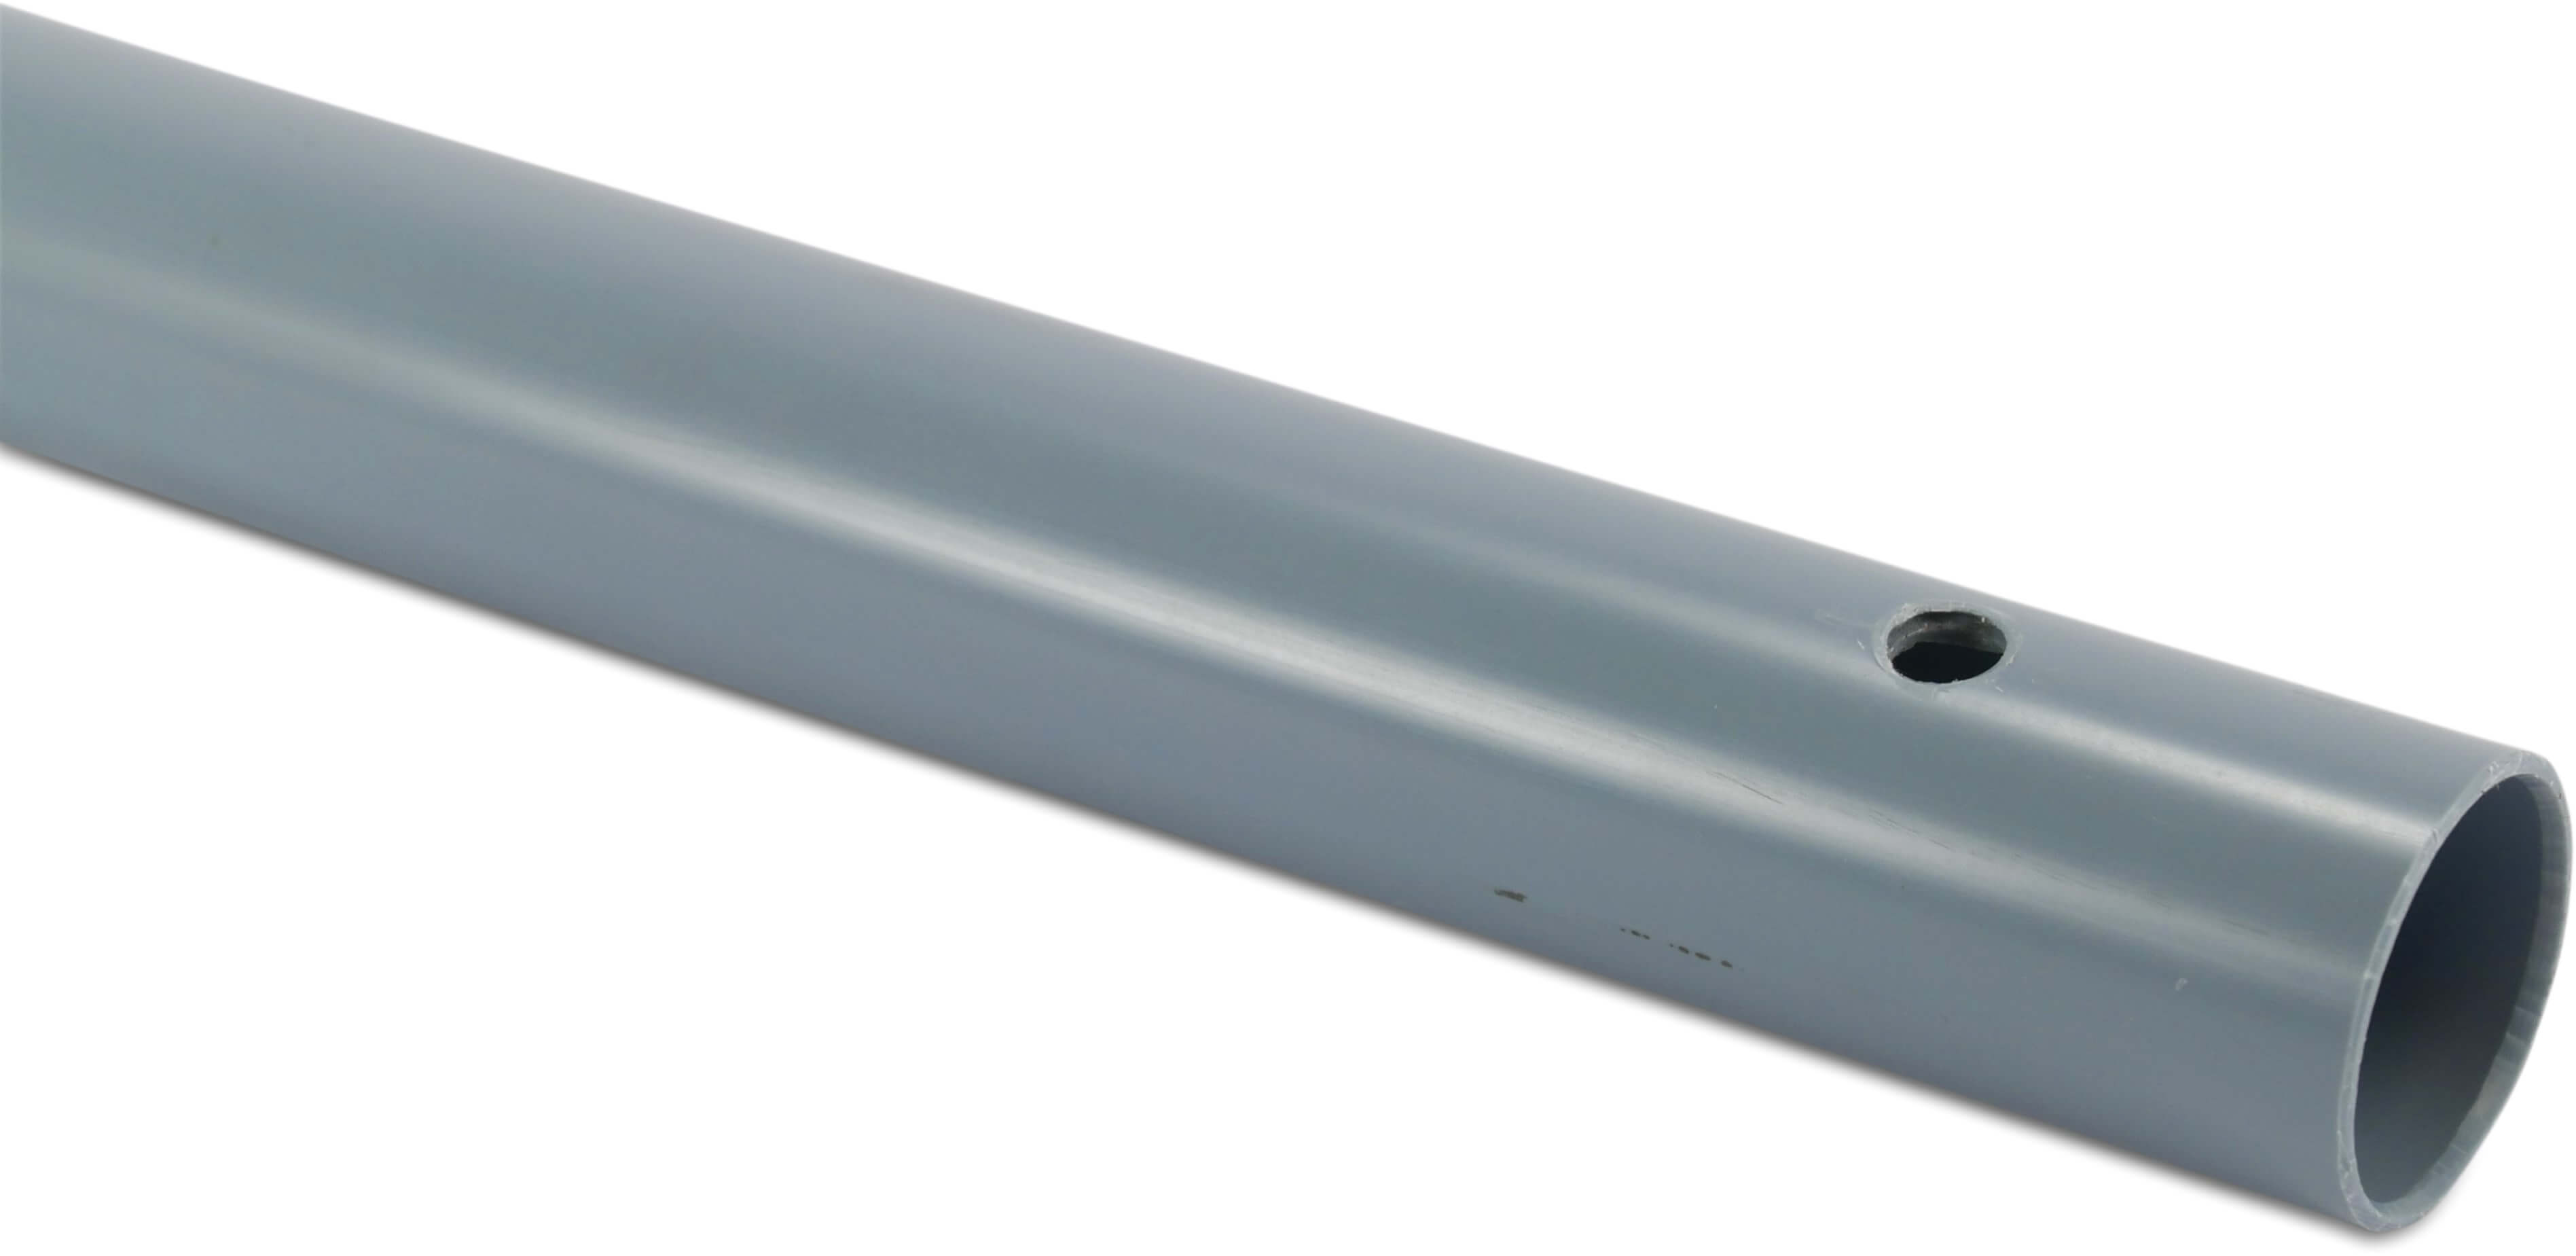 Beregnungsrohr PVC-U 32 mm x 1,8 mm Klebemuffe x Glatt 10bar 3/8WW Dunkelgrau 75cm 4,54m